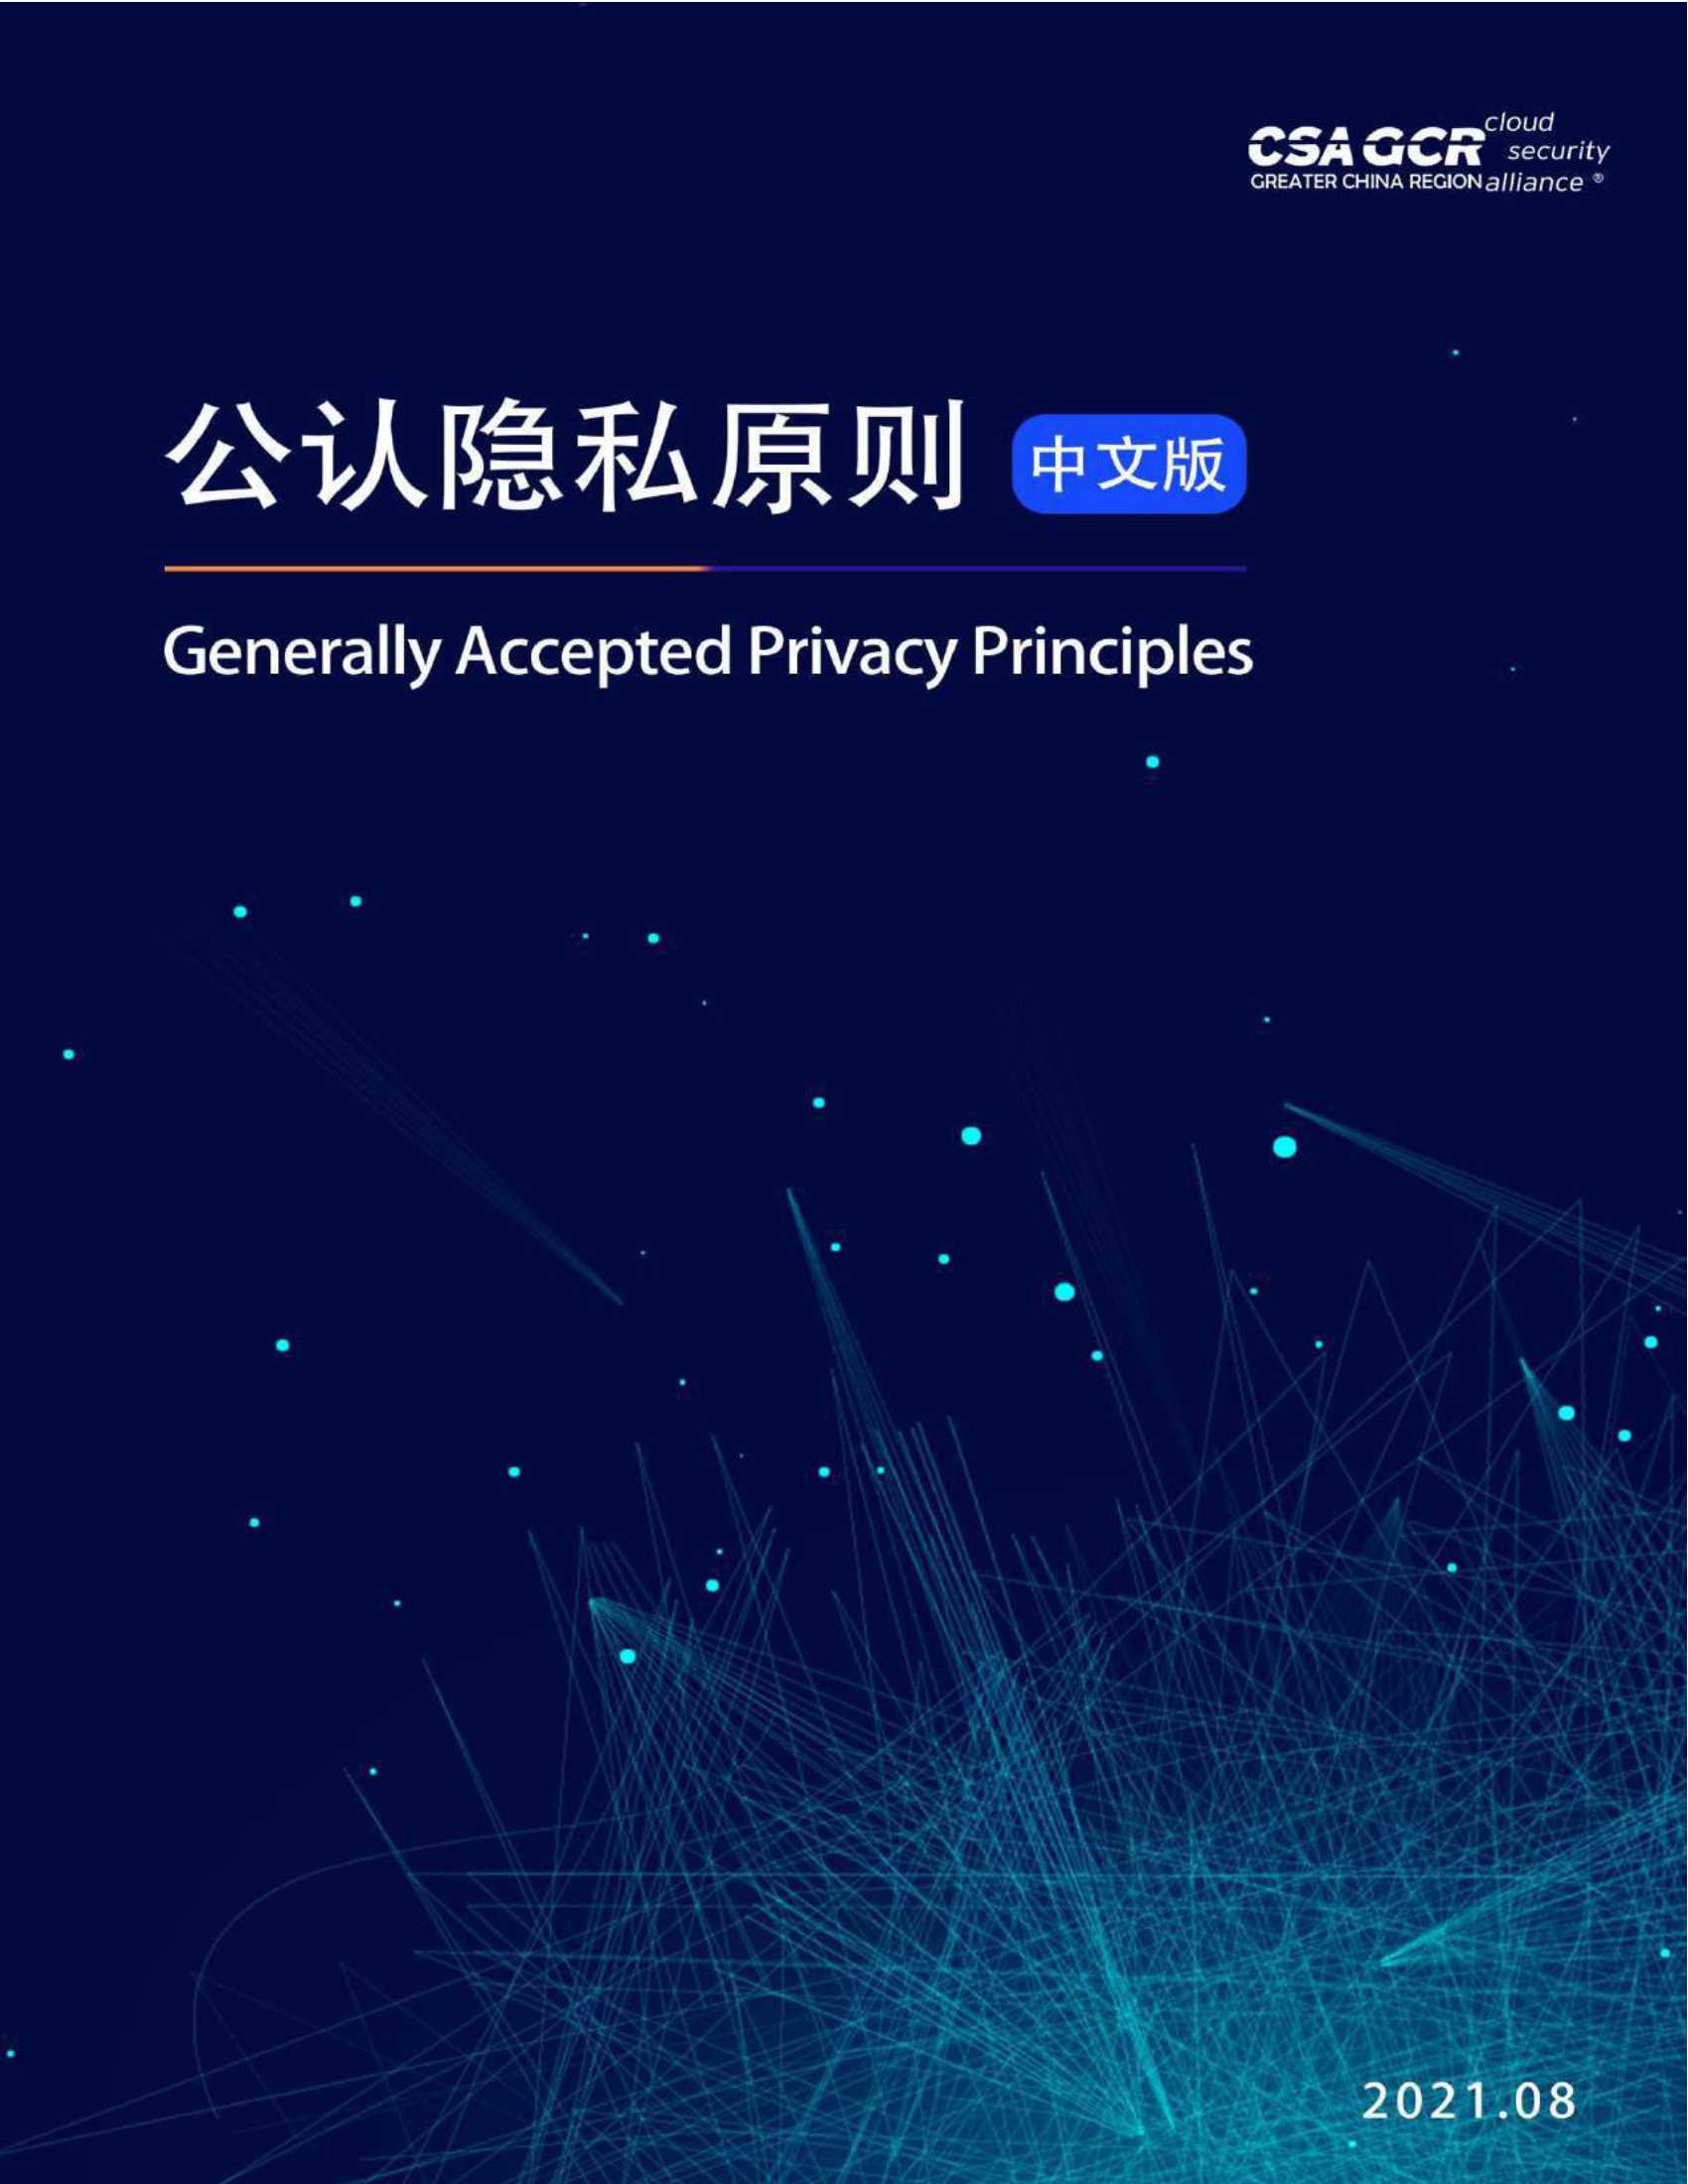 云安全联盟-公认隐私原则-2021.08-69页